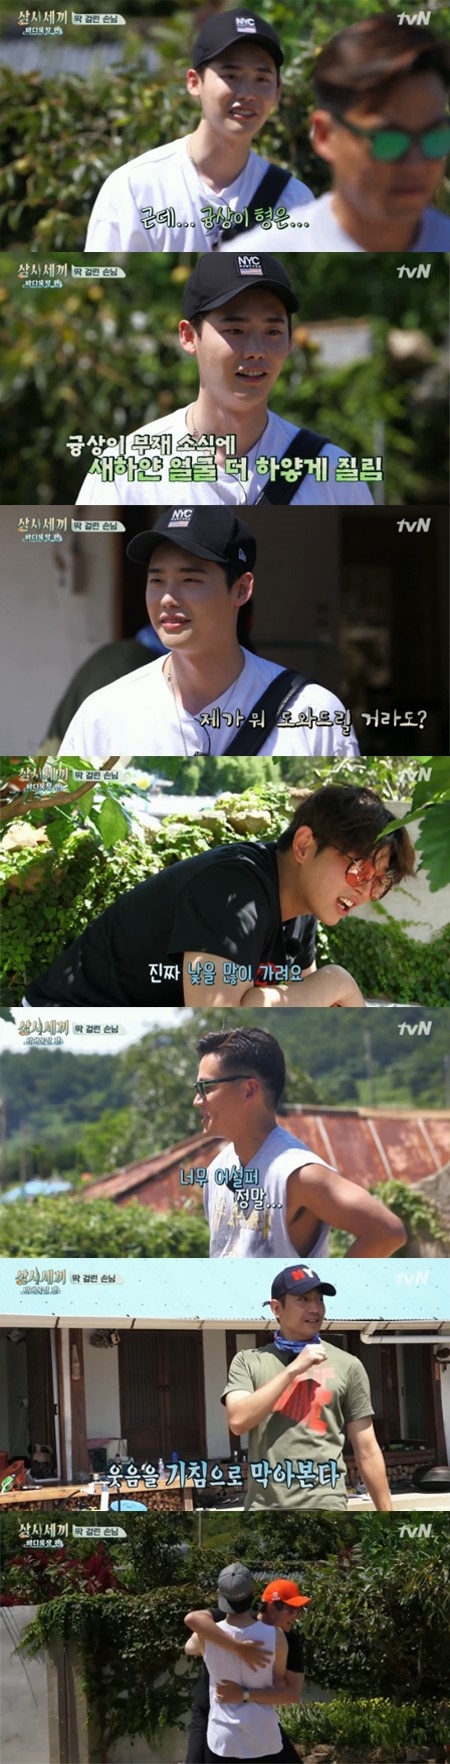 [사진]tvN '삼시세끼-바다목장 편' 방송화면 캡처